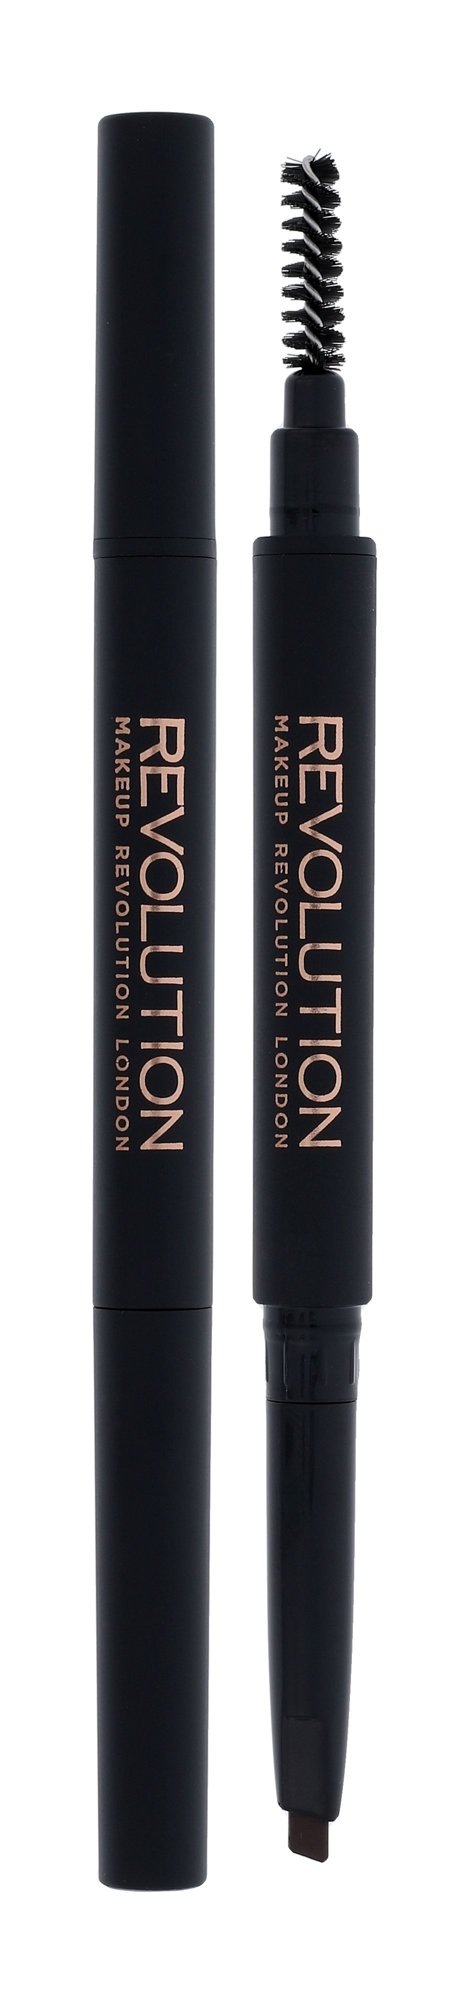 Makeup Revolution London Duo Brow Definer 0,15g antakių pieštukas